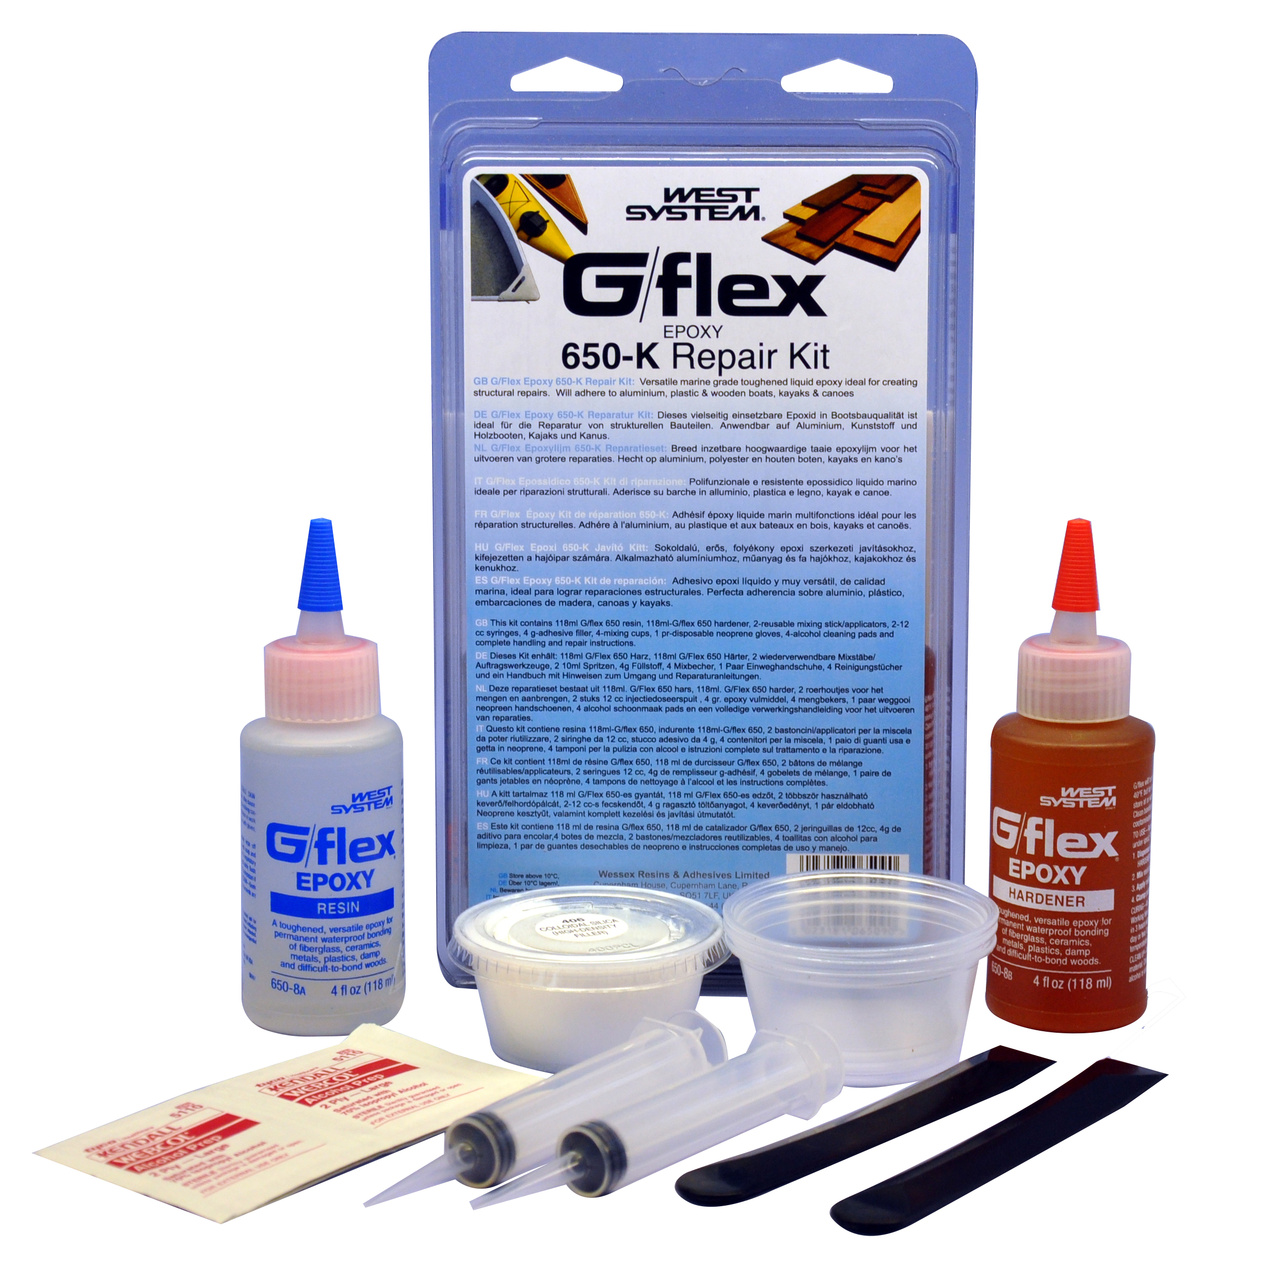 G/FLEX 650-K REPAIR KIT